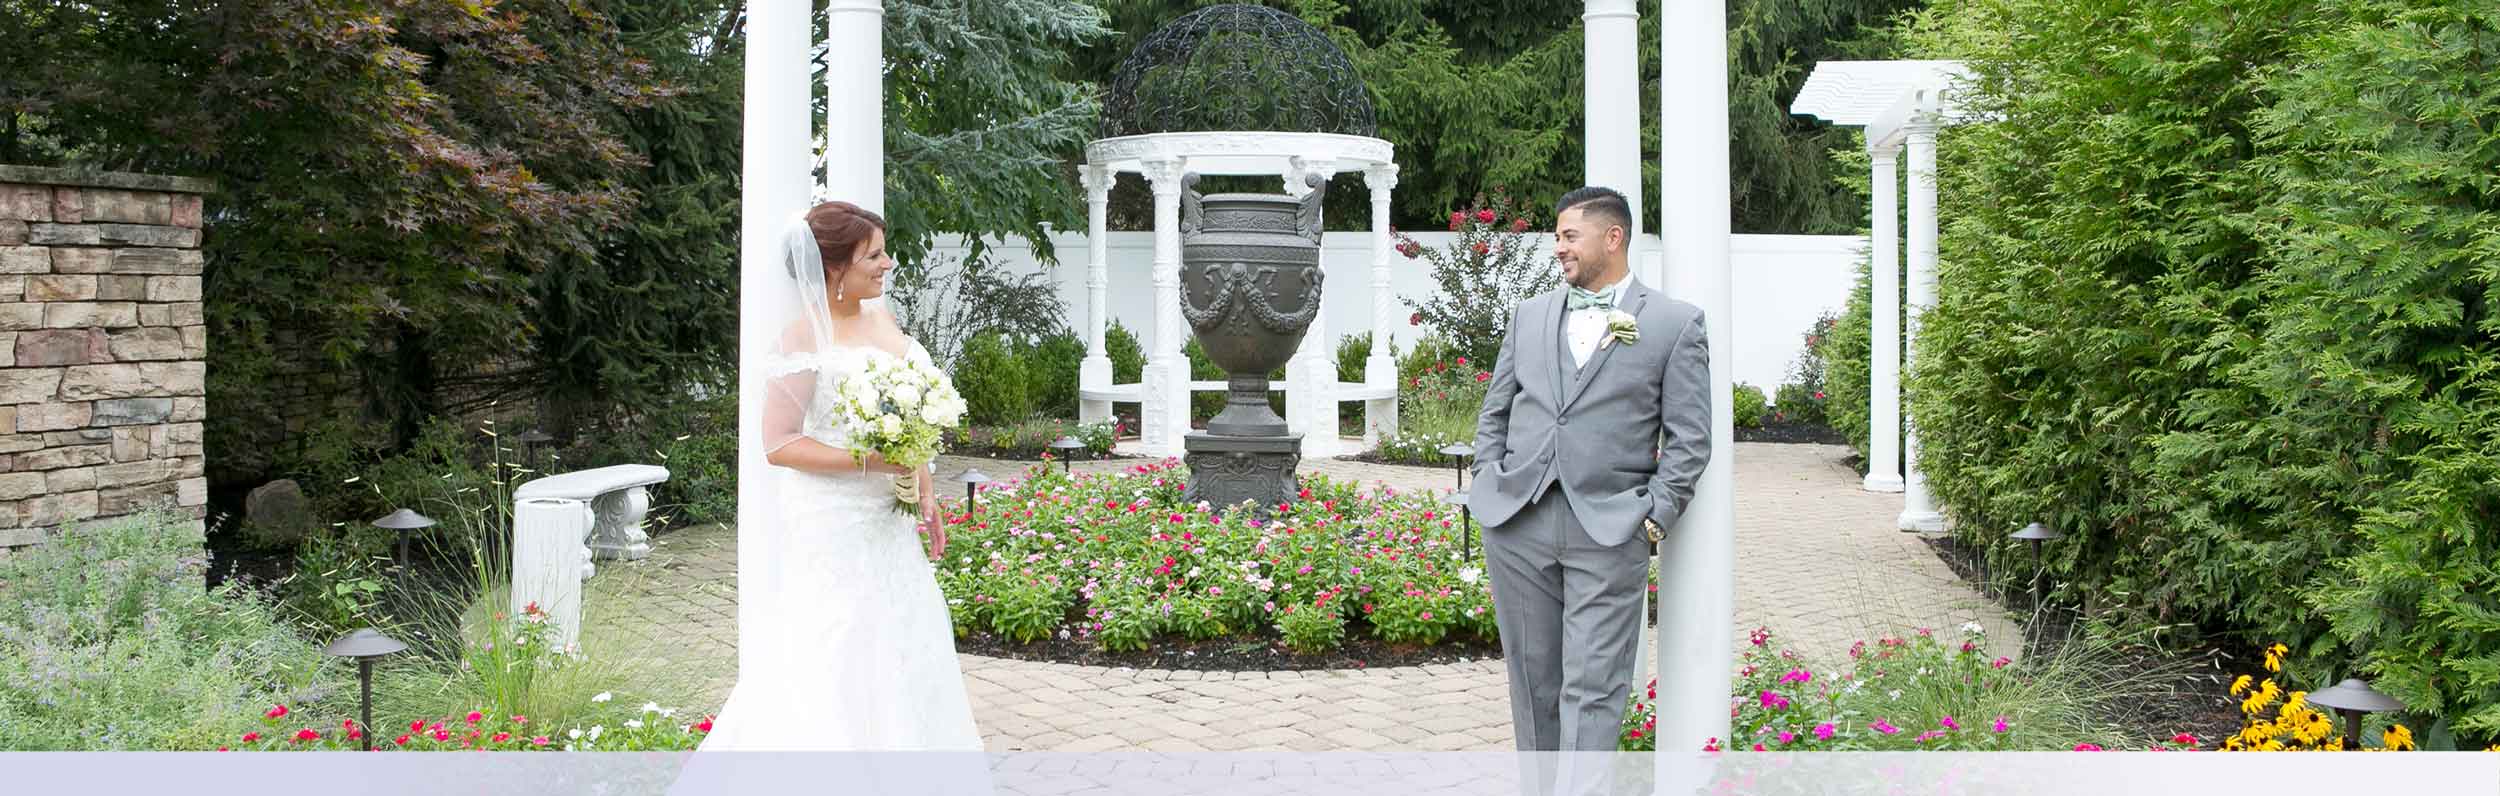 Outdoor Nj Wedding Venue Ceremony Garden